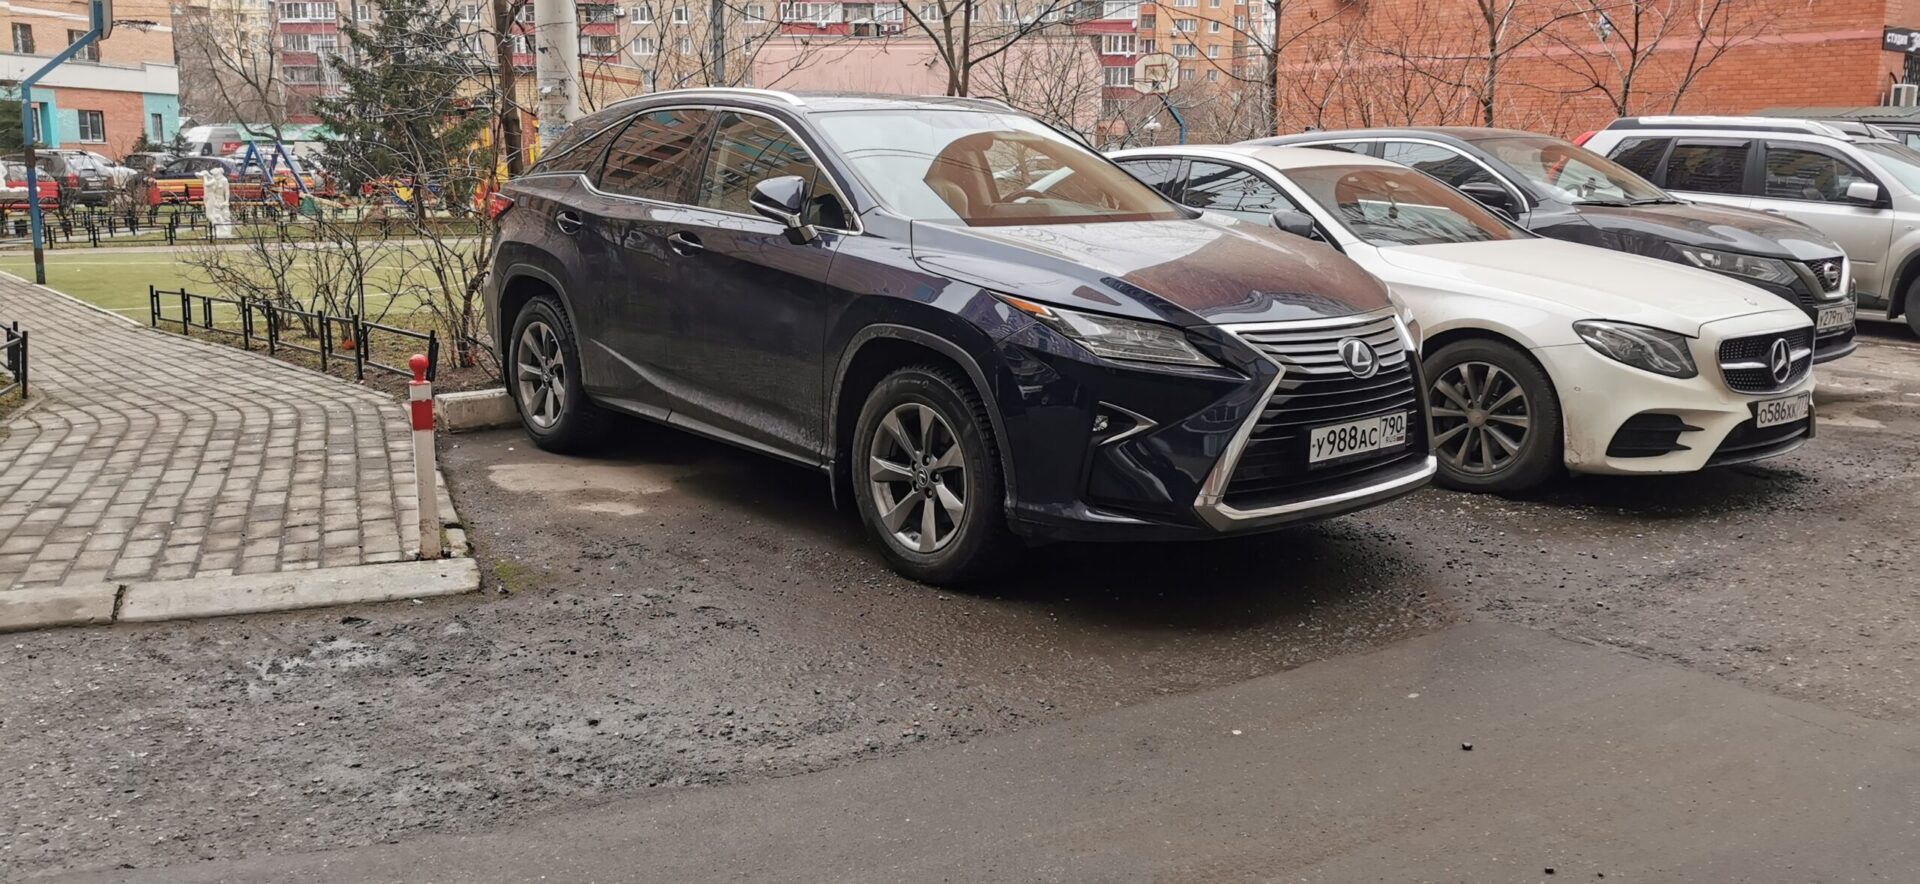 Власти Японии запретили импорт в РФ автомобилей марок Lexus и Infiniti с 5 апреля 2022 года